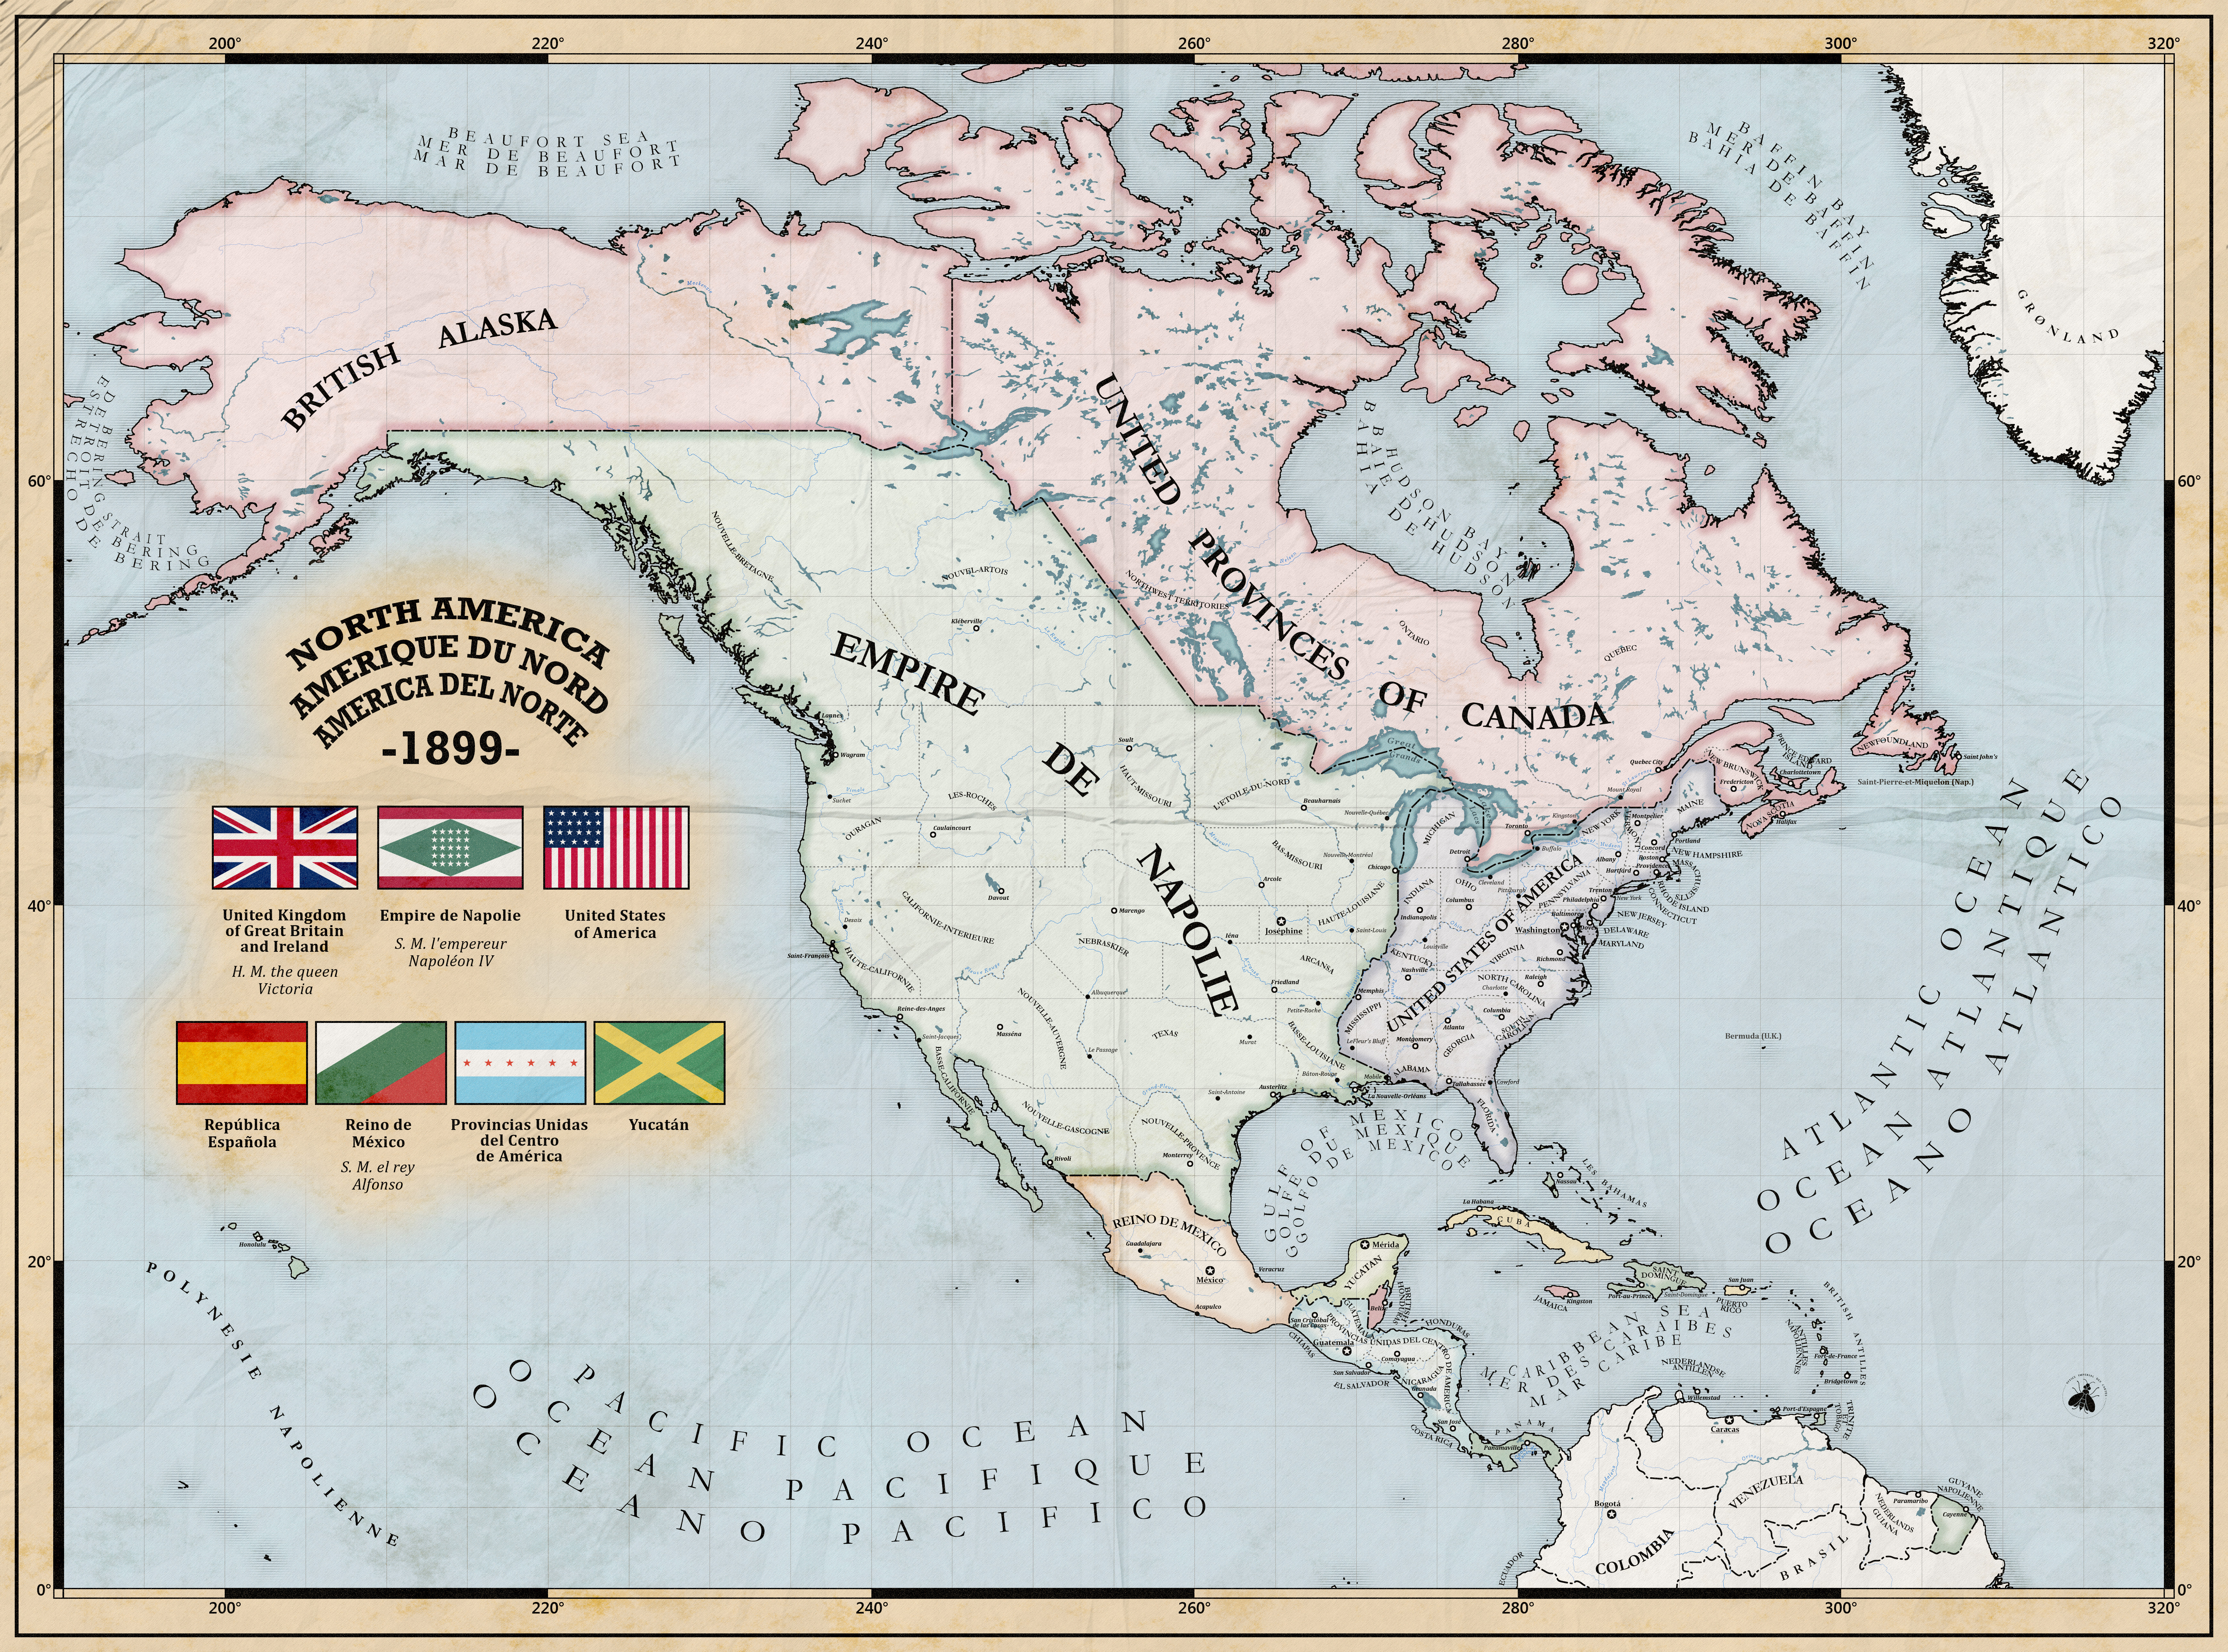 Napoleonic Empire in North America (Alt History) by ZalringDA